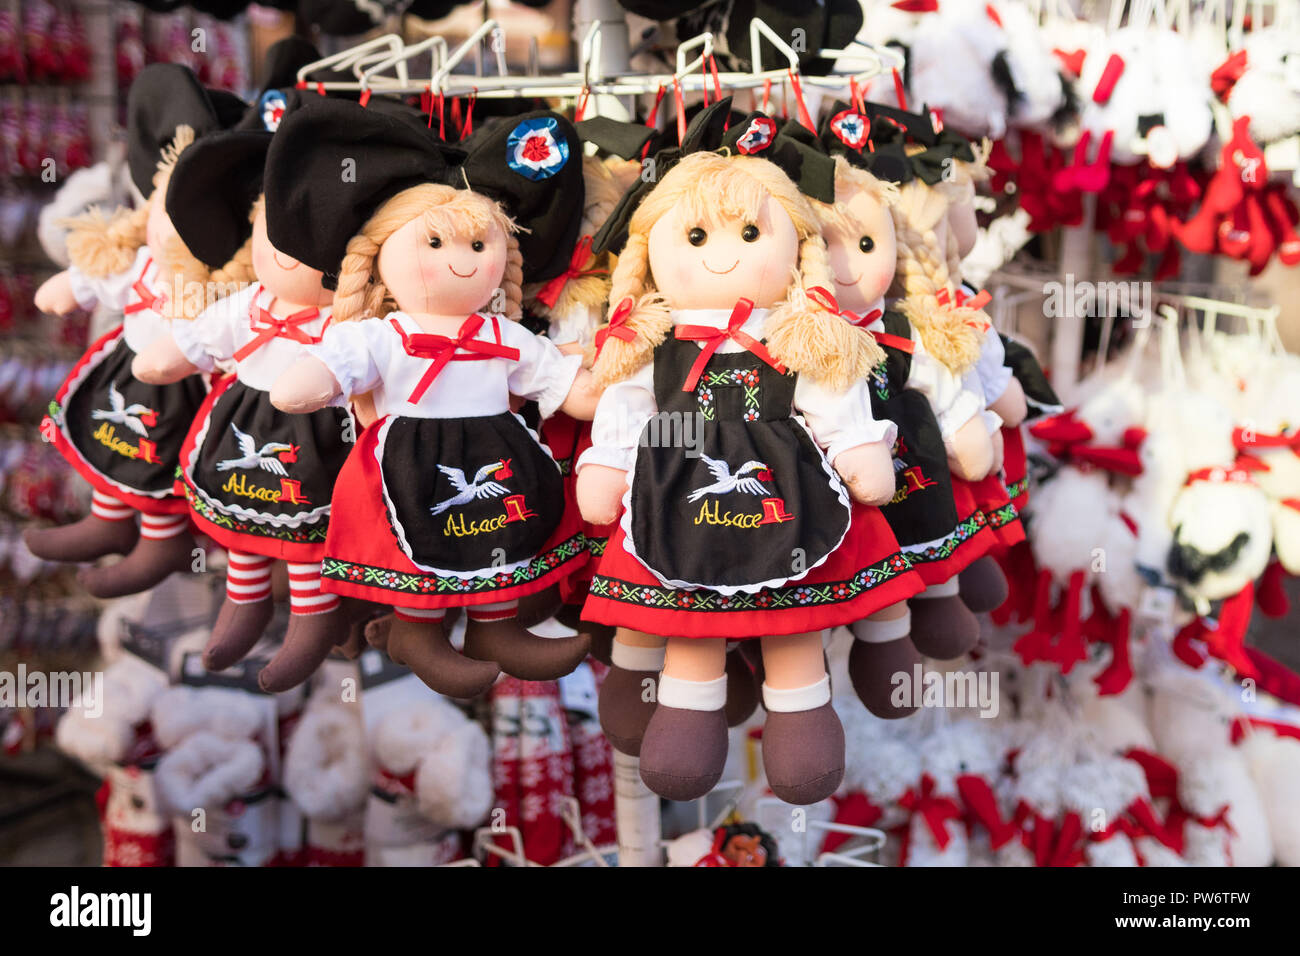 Elsass souvenir Puppen zum Verkauf in Straßburg, Frankreich, Europa  Stockfotografie - Alamy